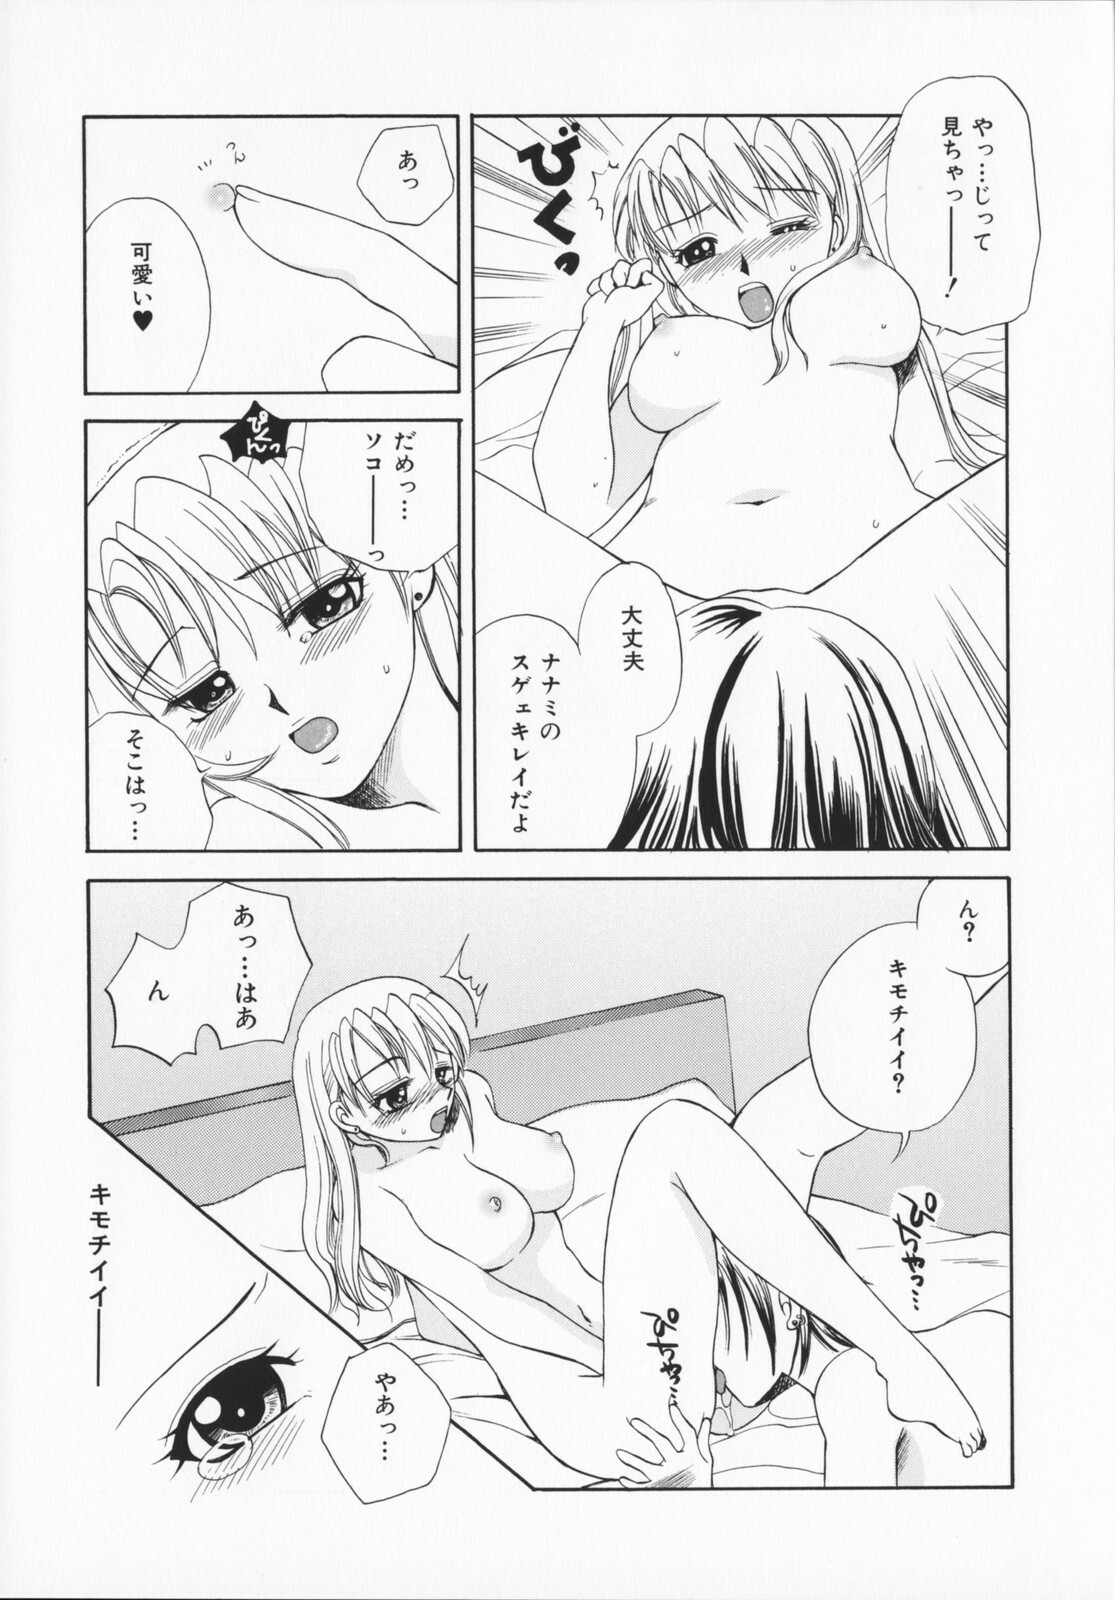 [Ureshino Megumi]Genkaiharetsu (LIMIT EXPLOSION) page 26 full